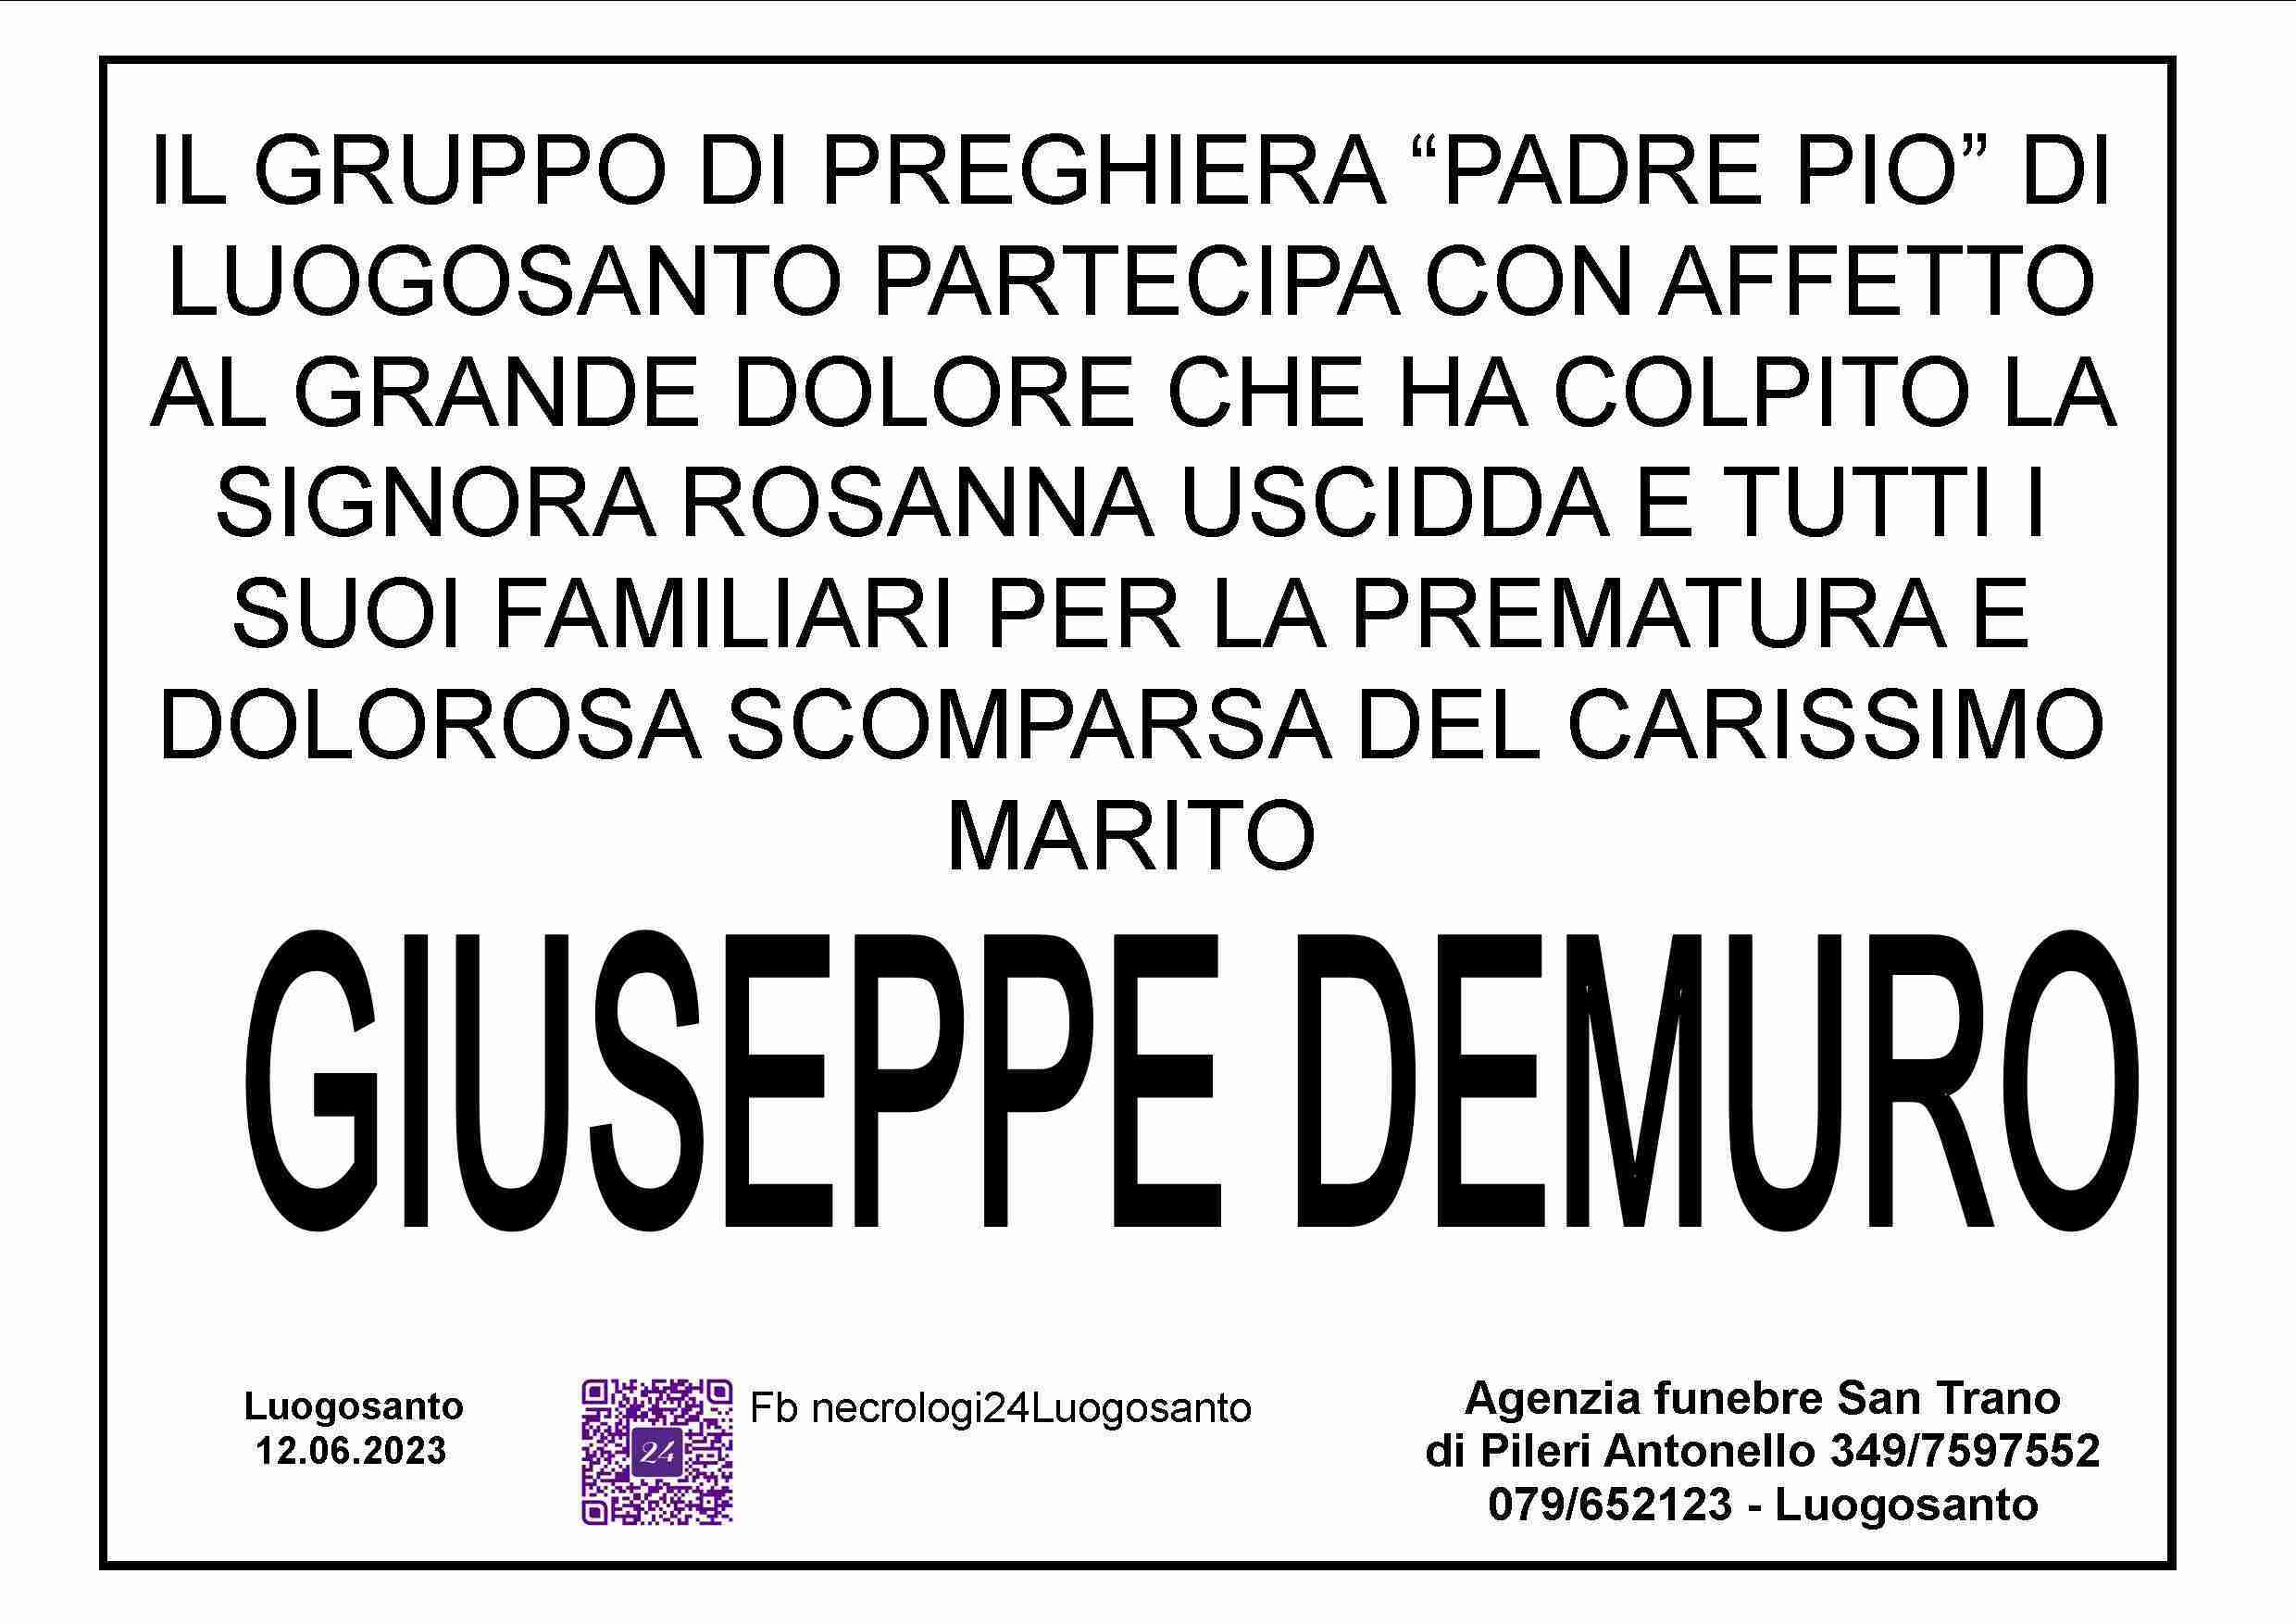 Giuseppe Demuro